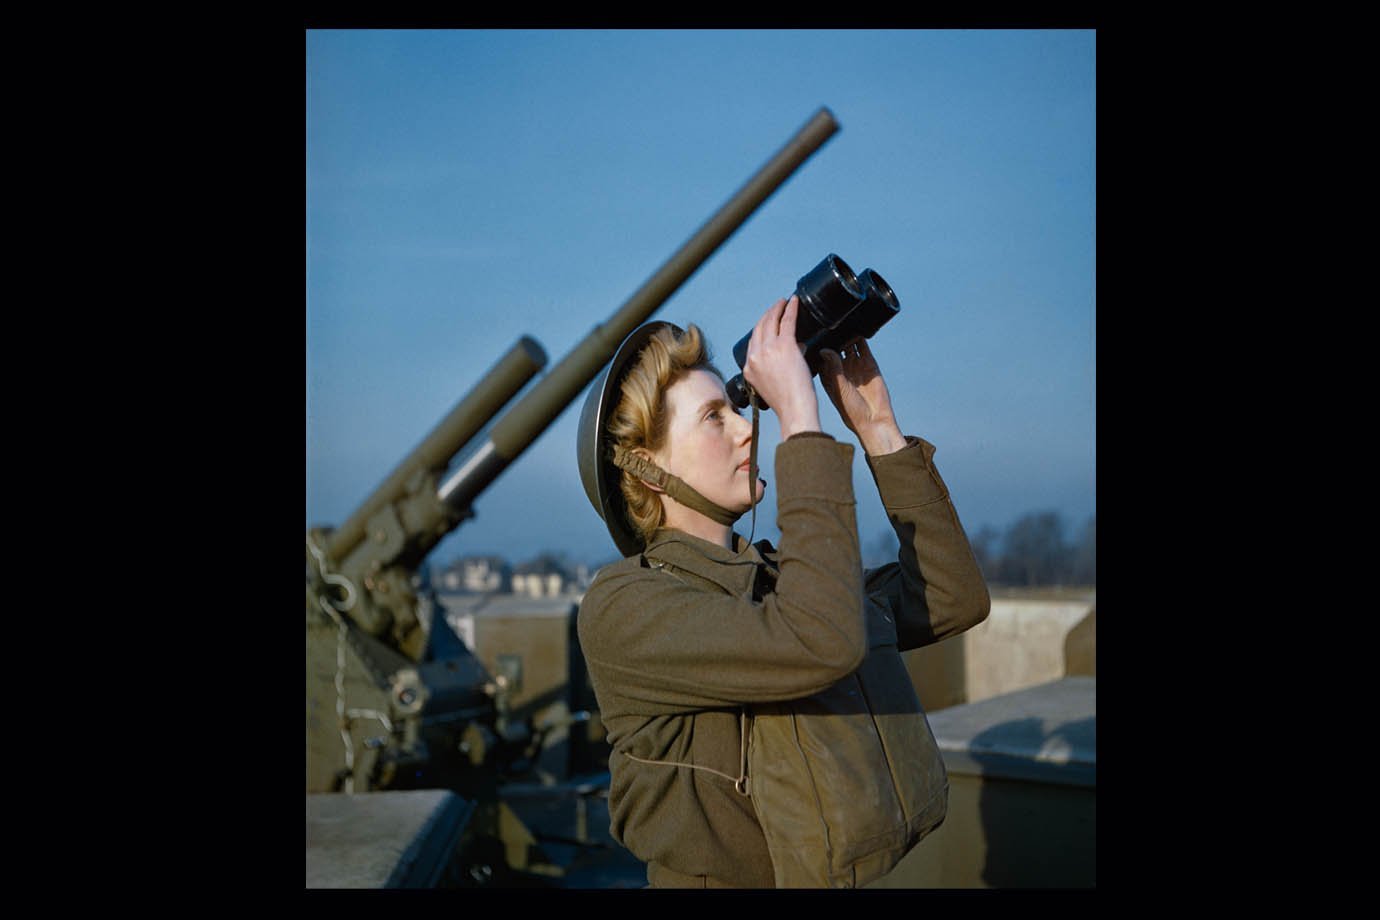 Fotos raras e coloridas da Segunda Guerra Mundial foram reunidas em livro do IWM